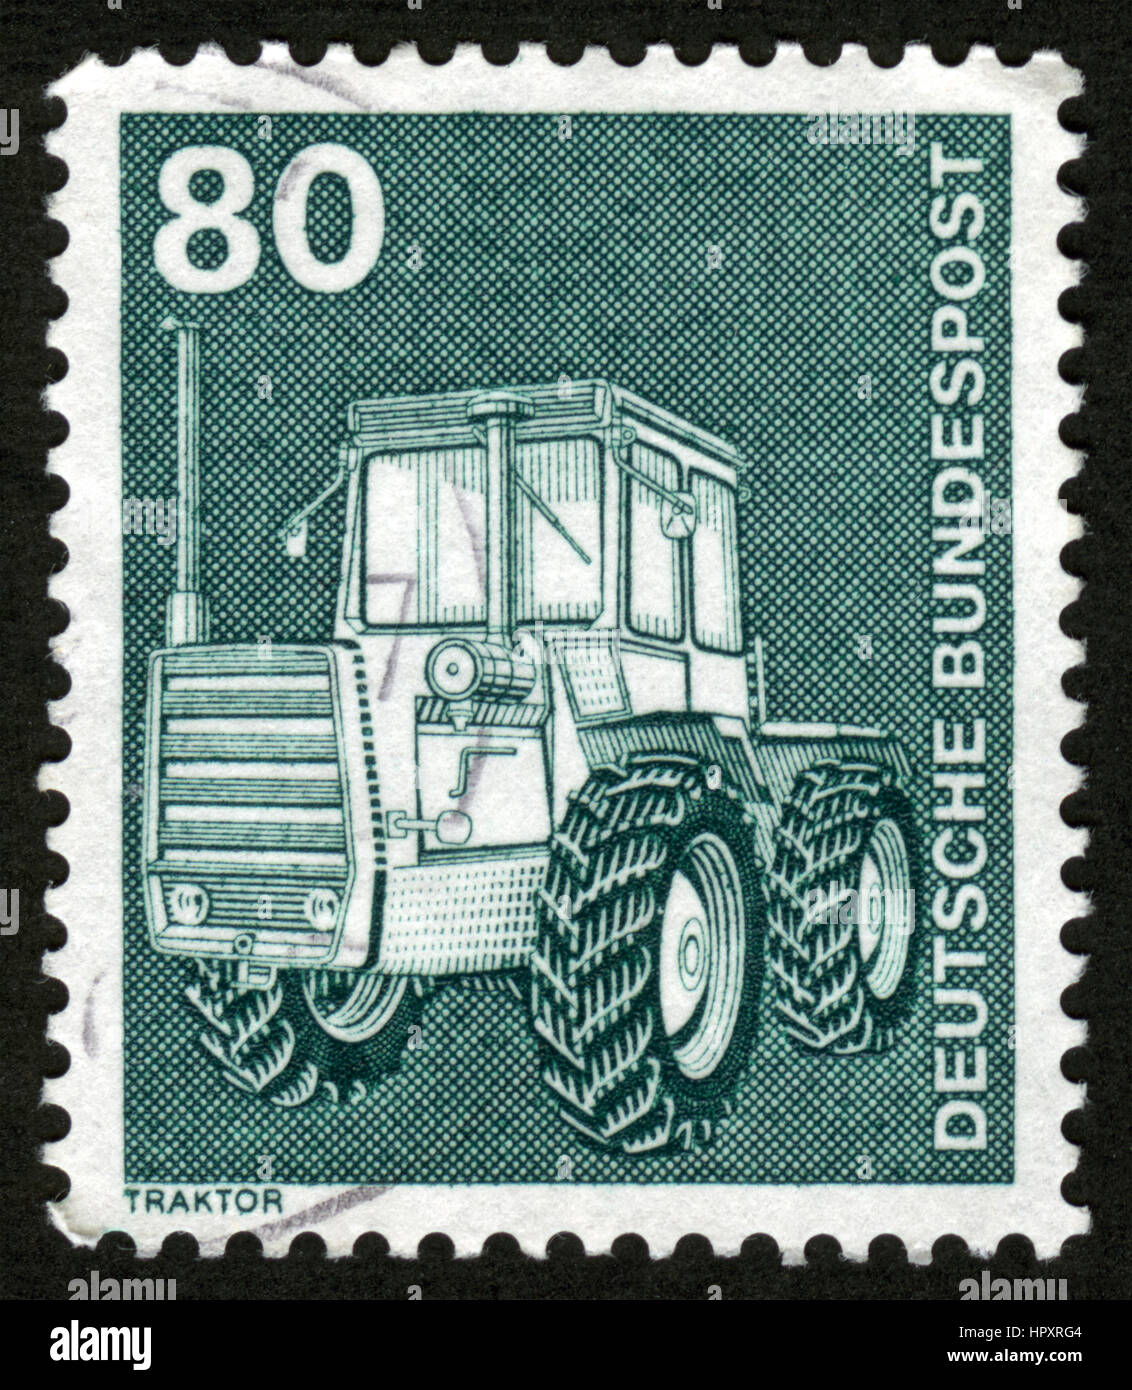 Allemagne, 1975, timbre-poste, le tracteur Banque D'Images